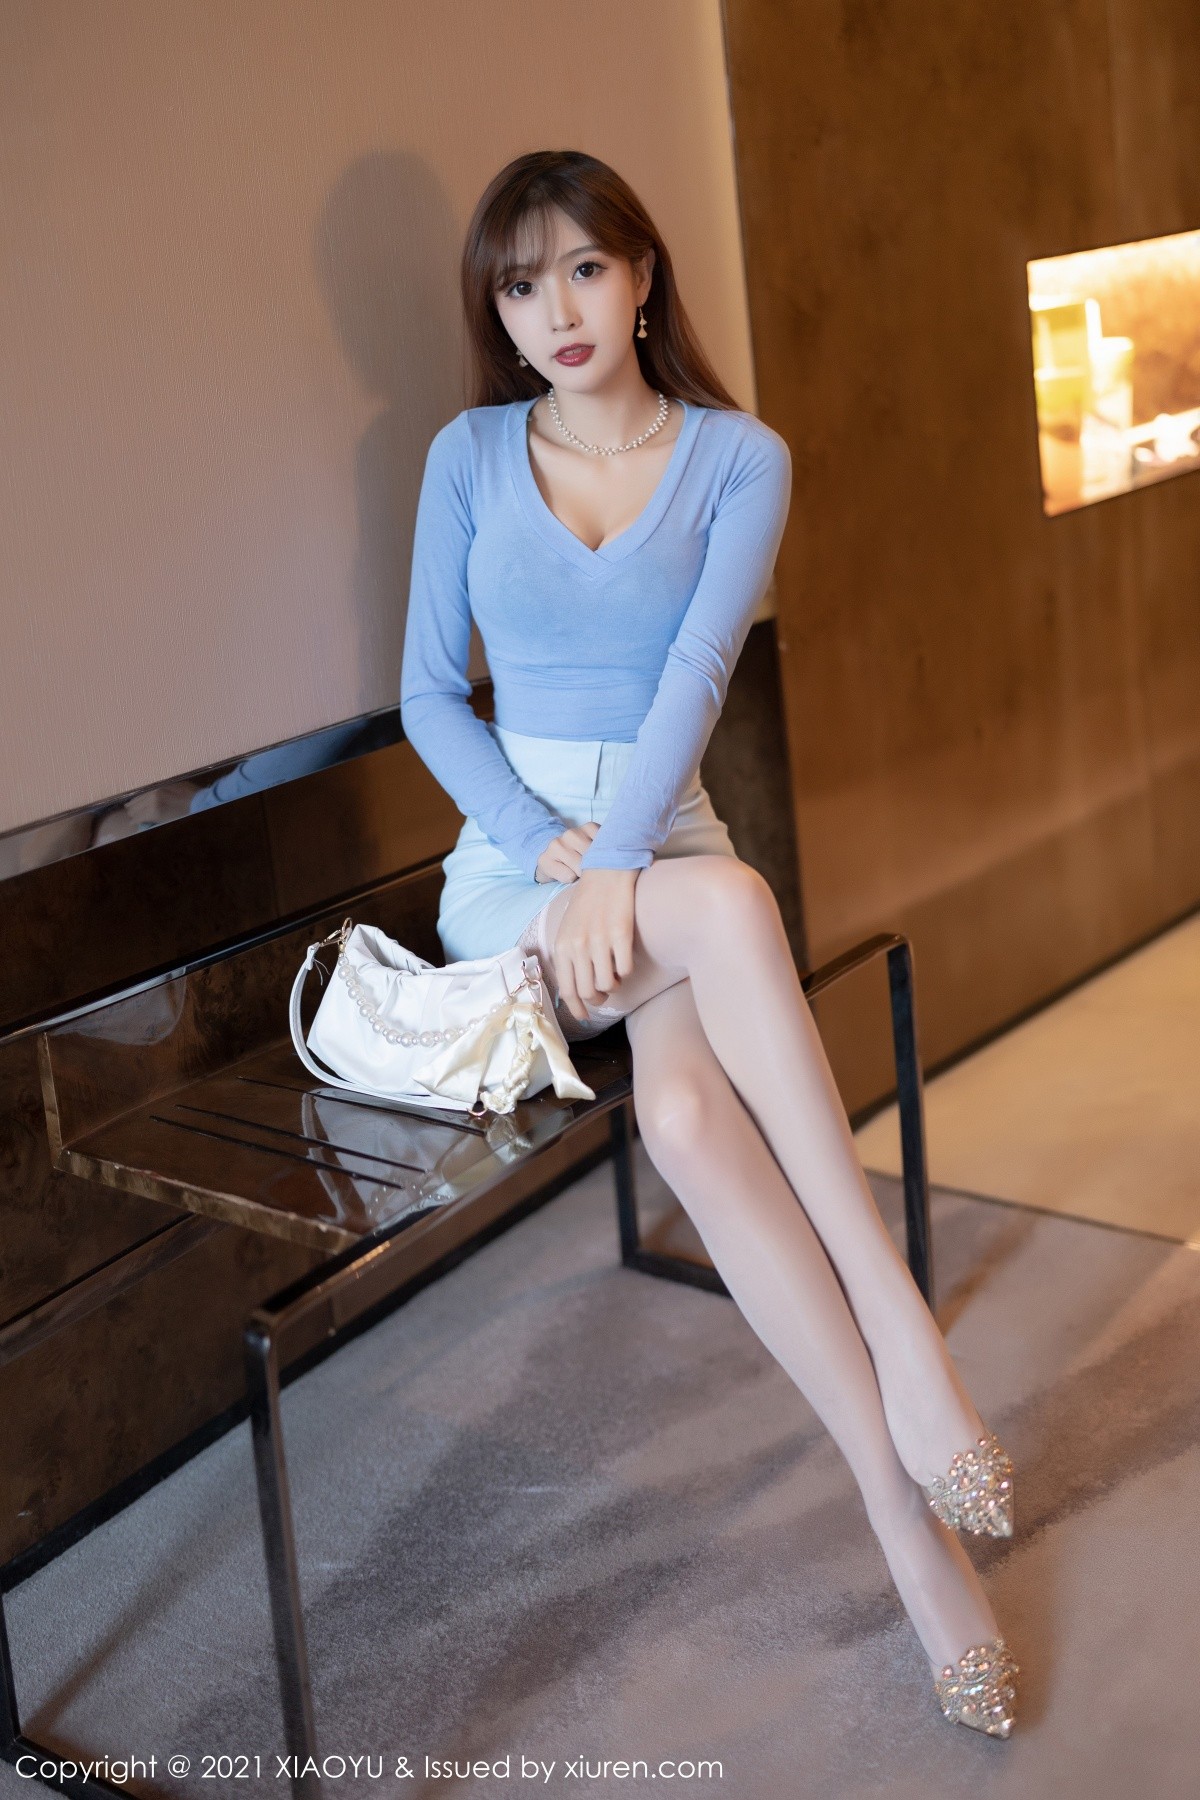 美女模特林星阑淡蓝色上衣搭配淡色超短裙性感写真